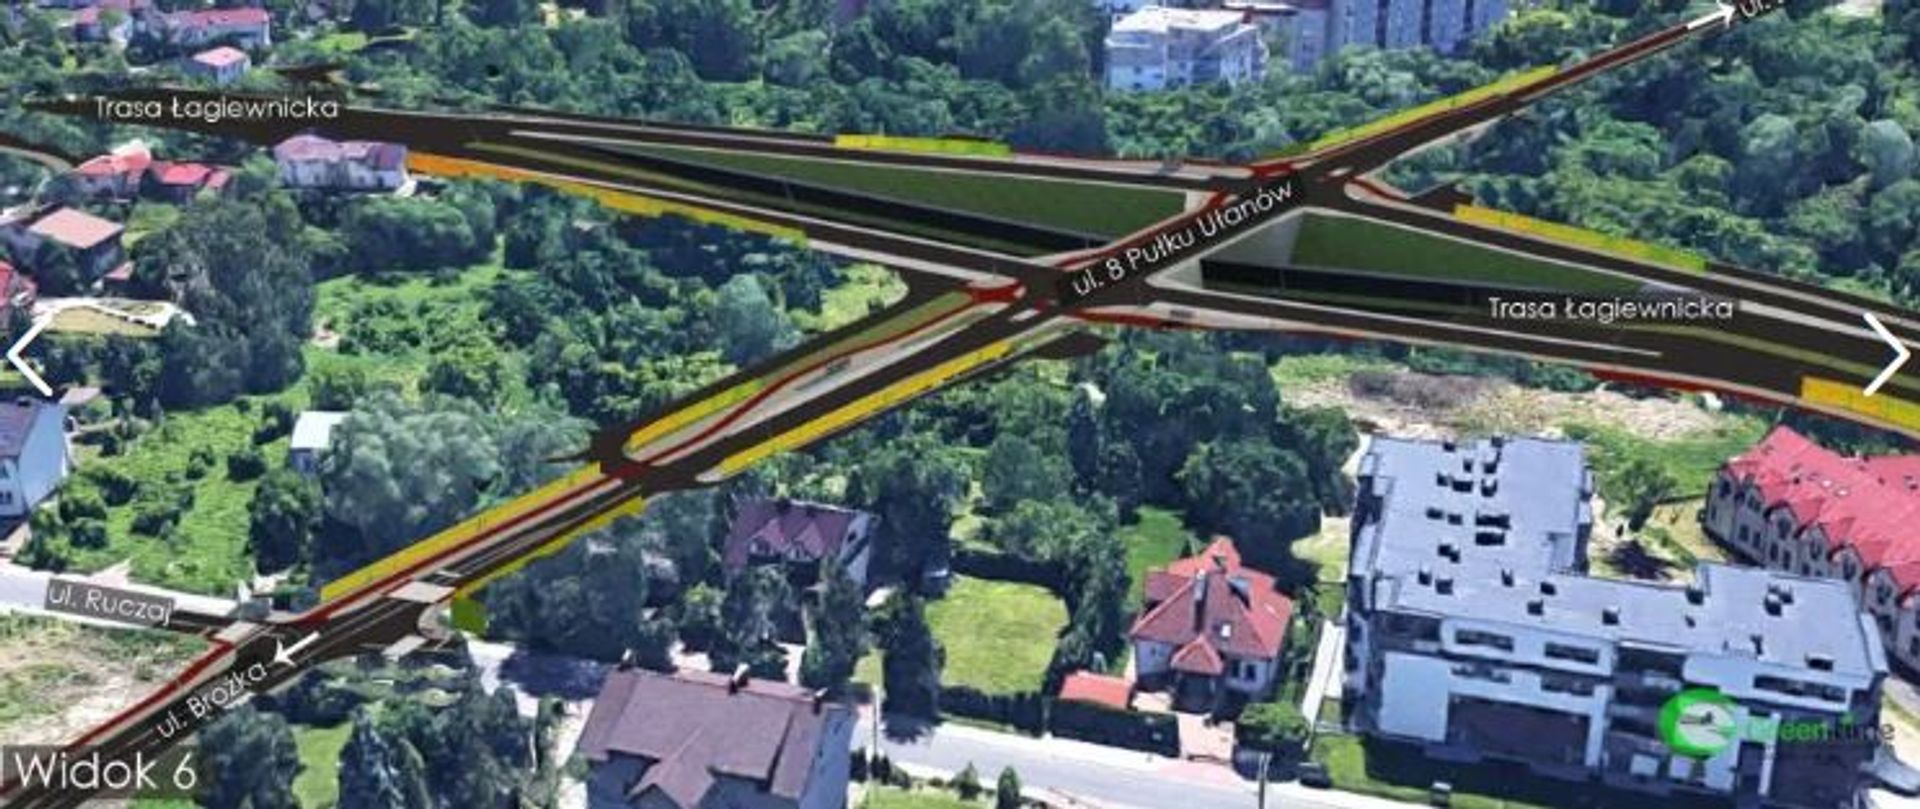 Zarząd Inwestycji Miejskich w Krakowie ogłosił przetarg na budowę ulicy 8 Pułku Ułanów 